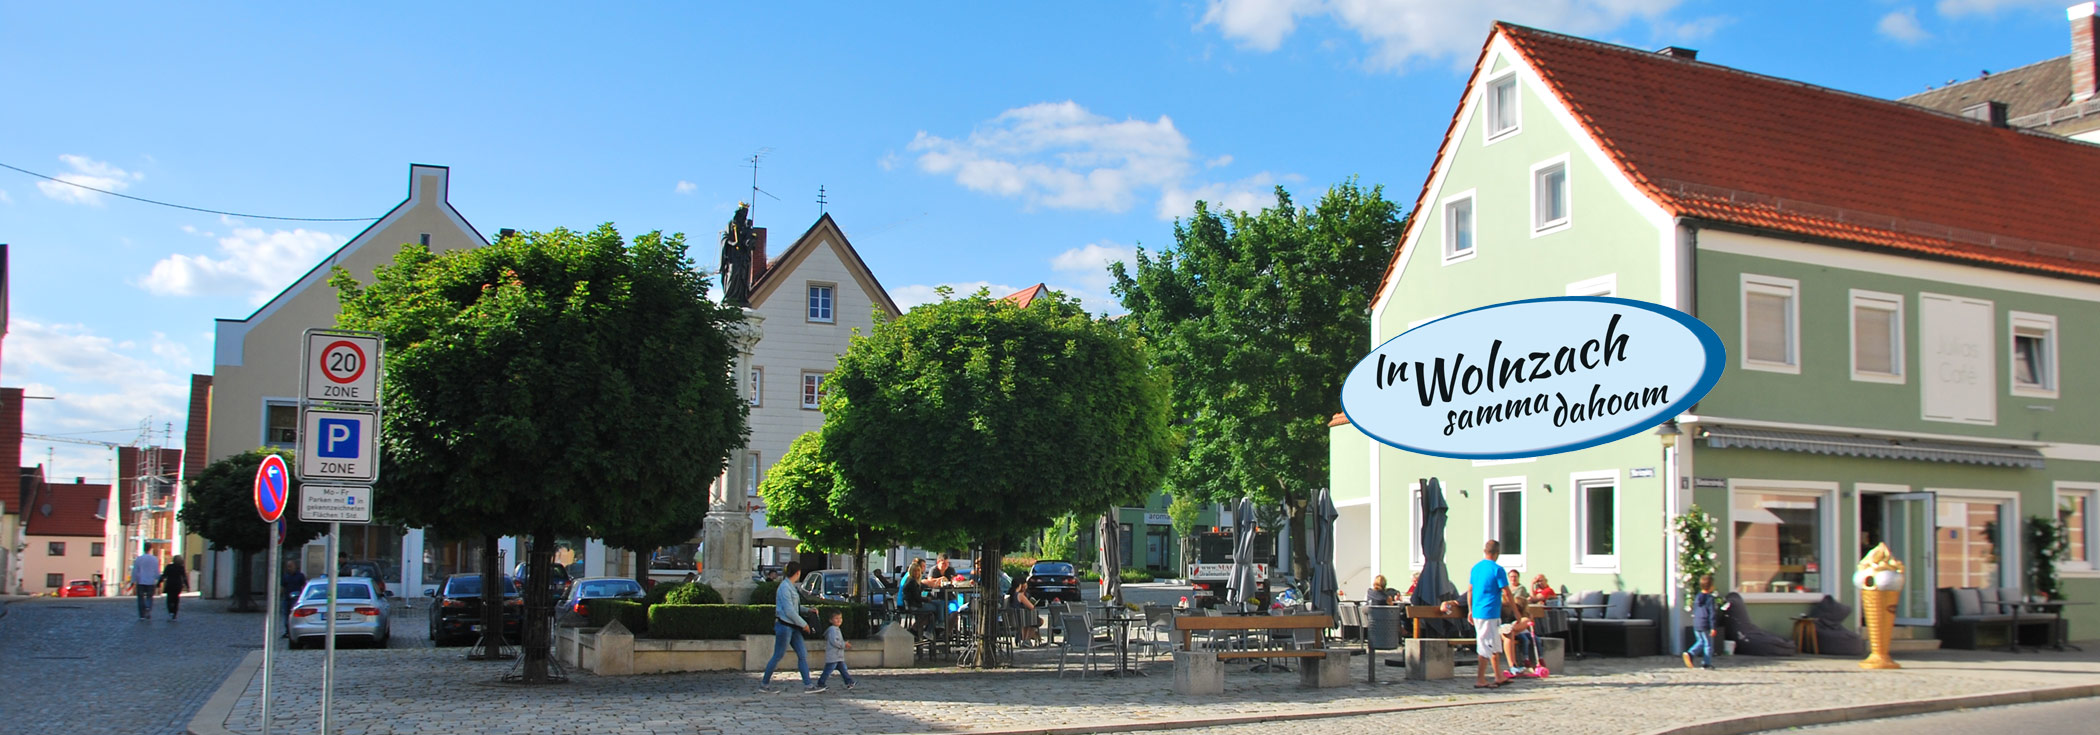 Marienplatz in Wolnzach